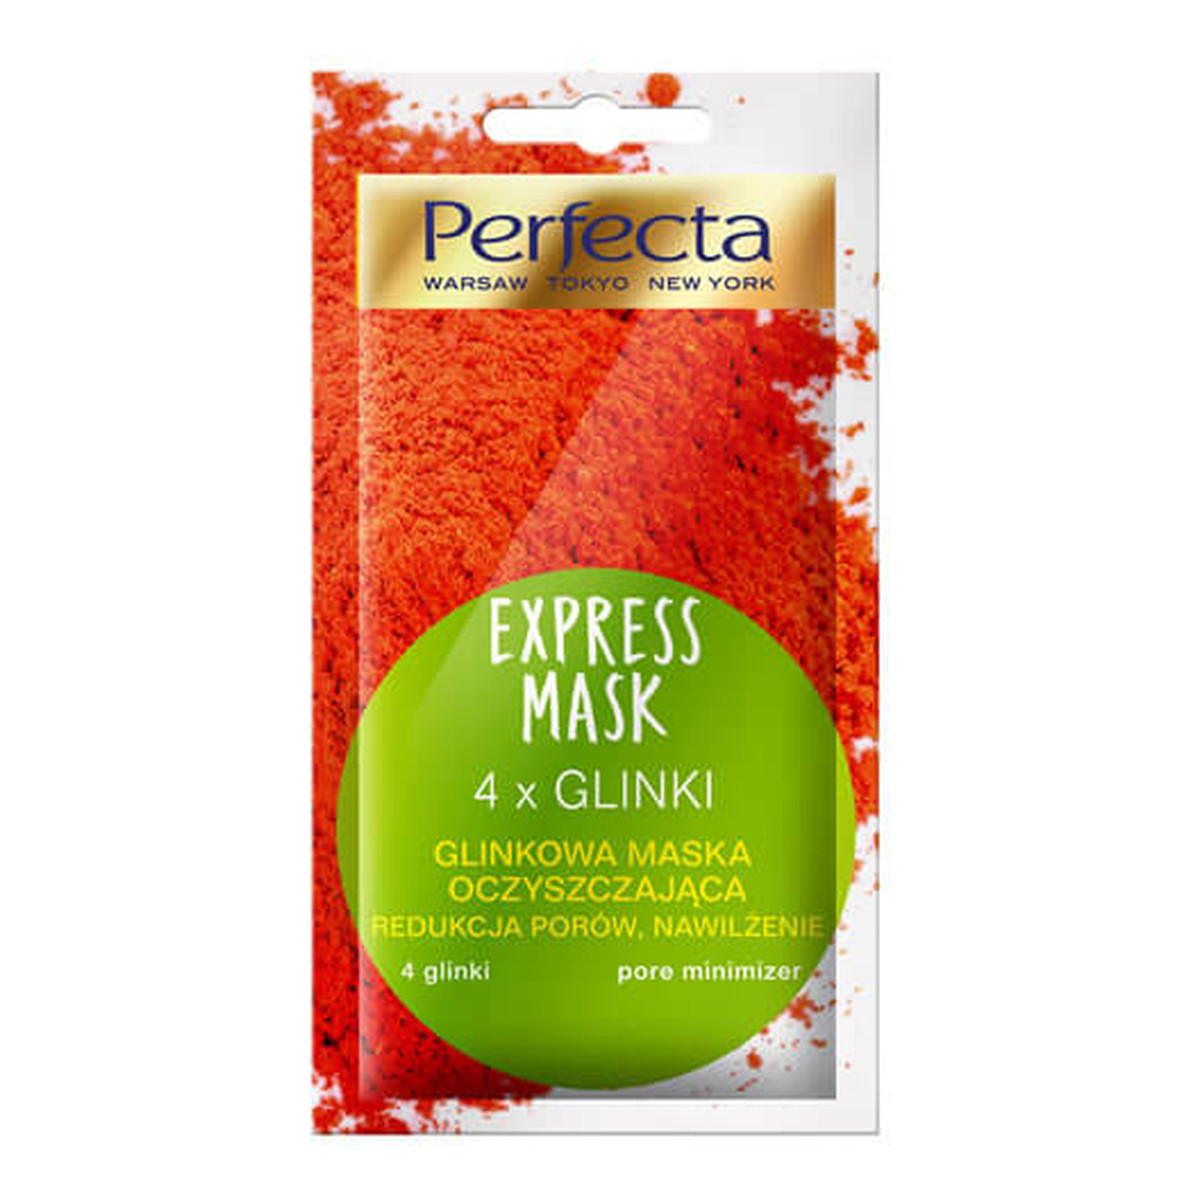 Perfecta Express Mask Glinkowa Maska oczyszczająca 4 Glinki 8ml